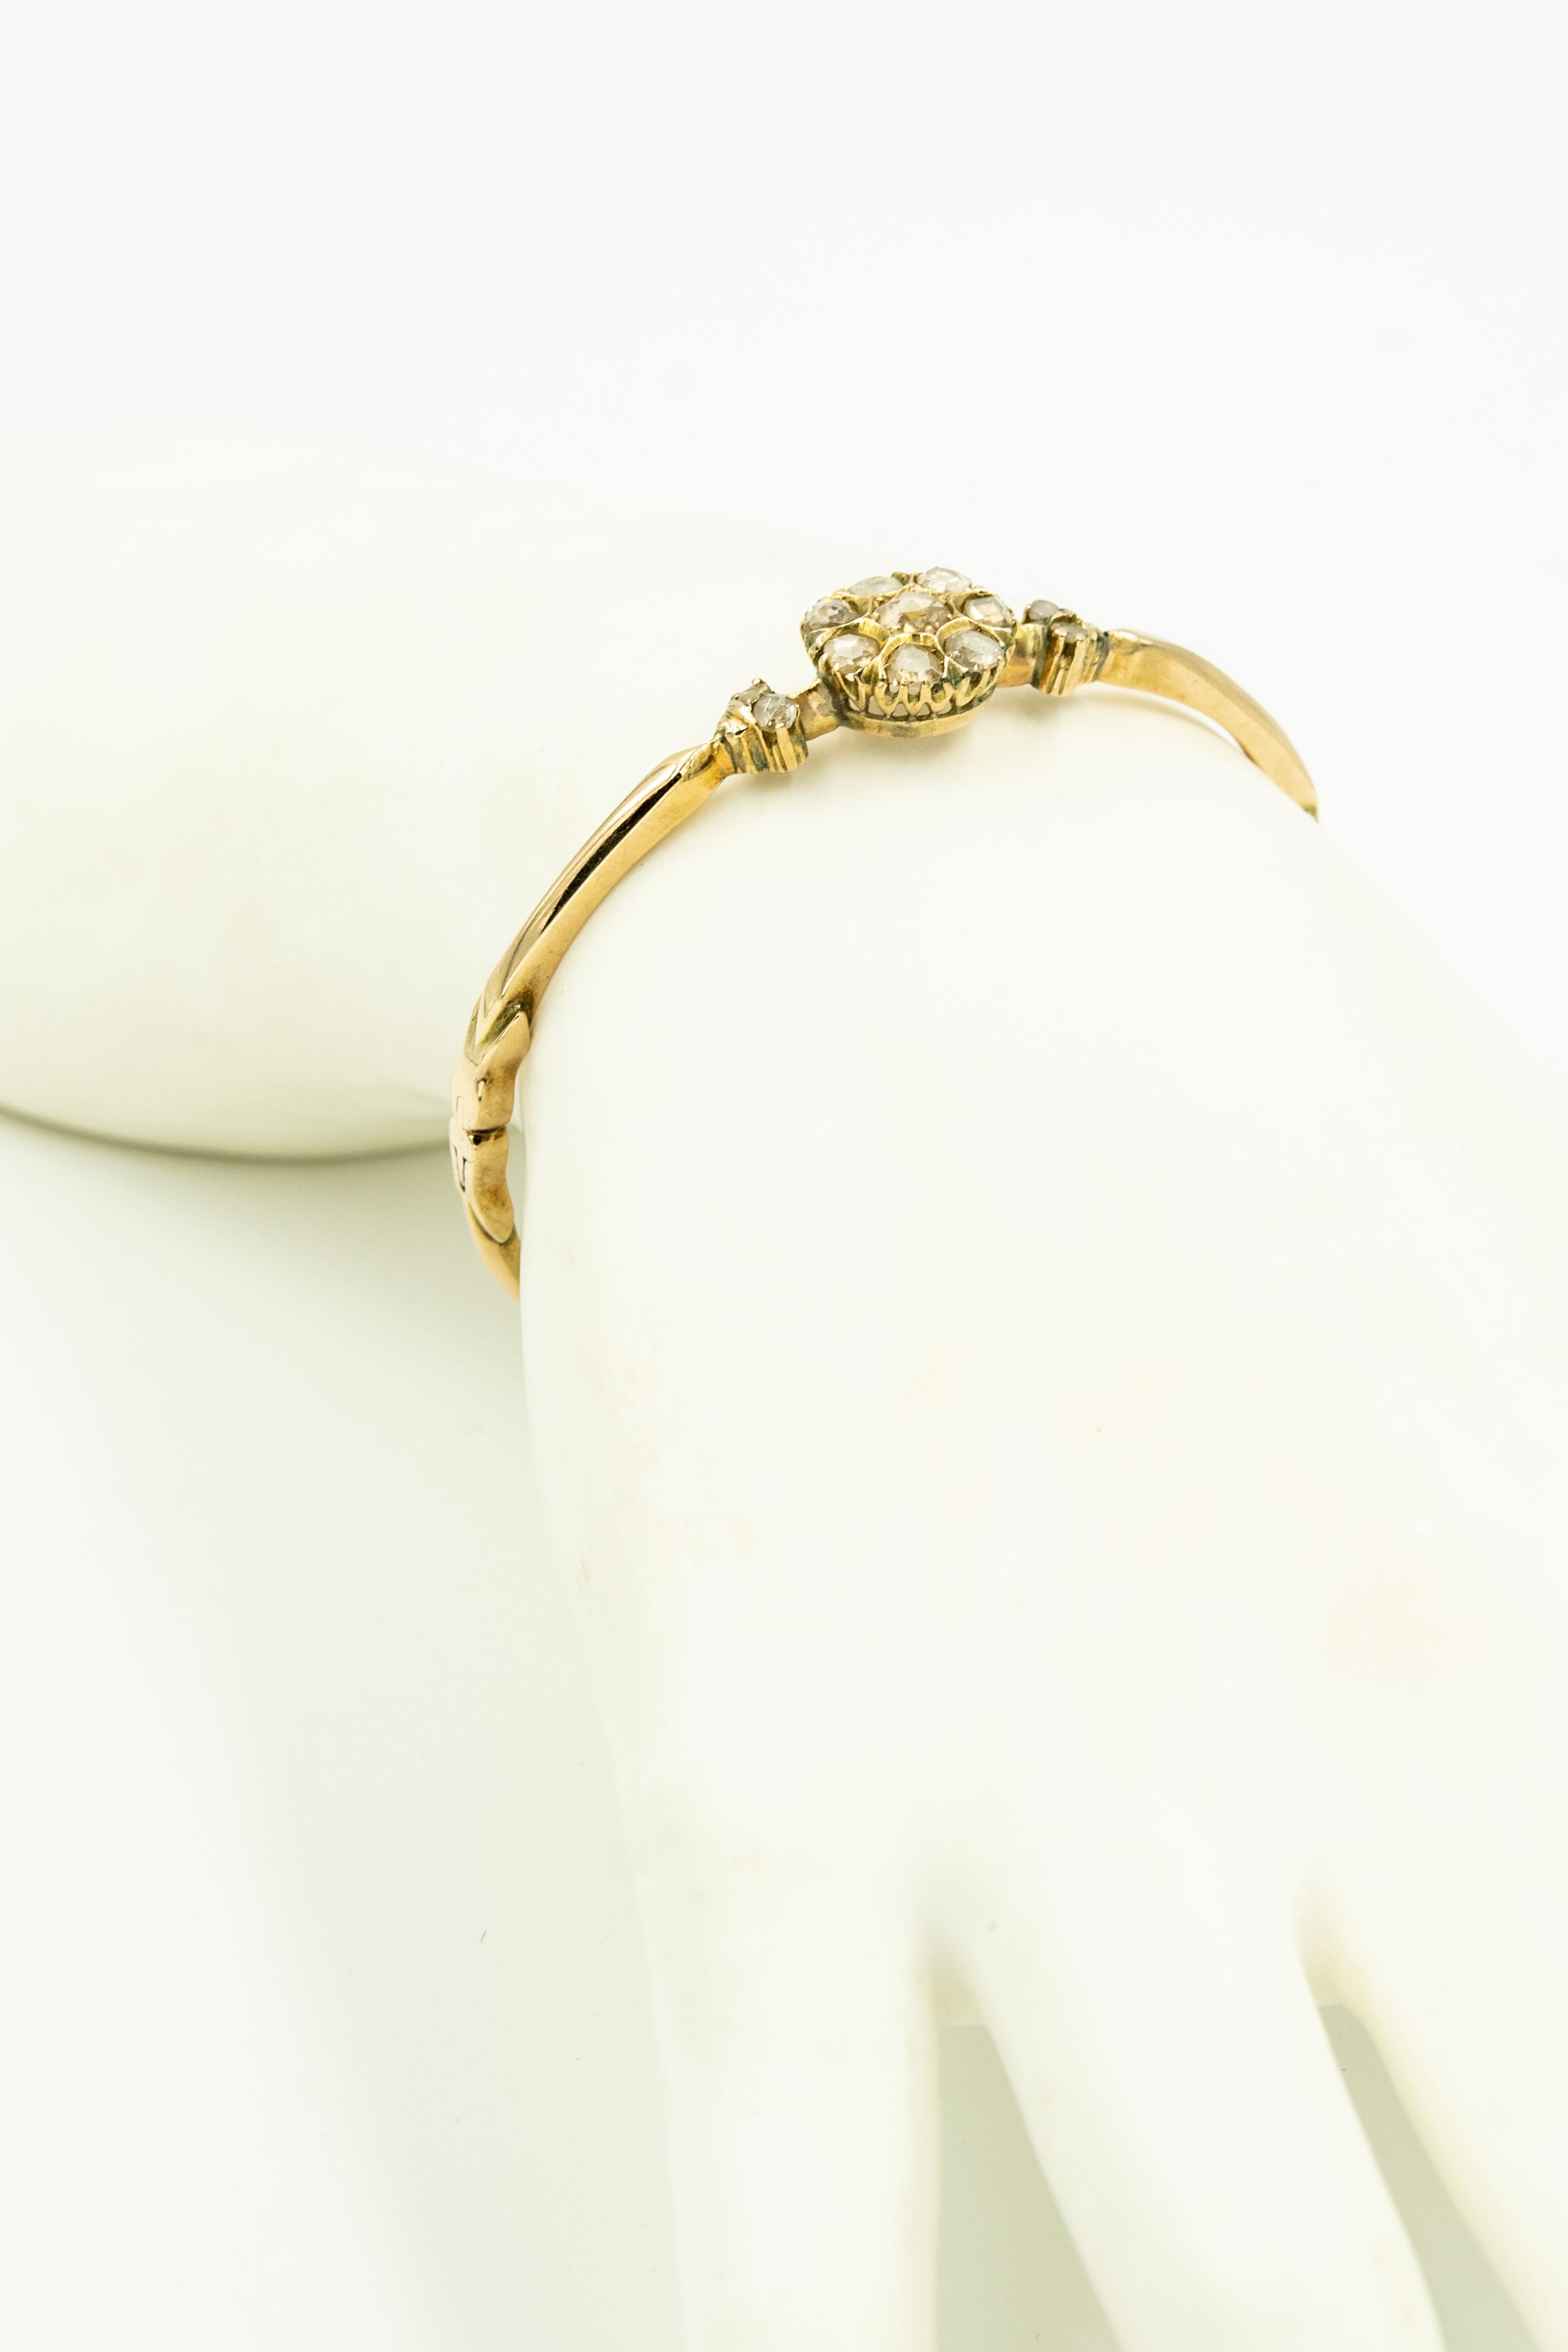 Women's Antique Victorian Floral Rose Cut Diamond Gold Bangle Bracelet For Sale